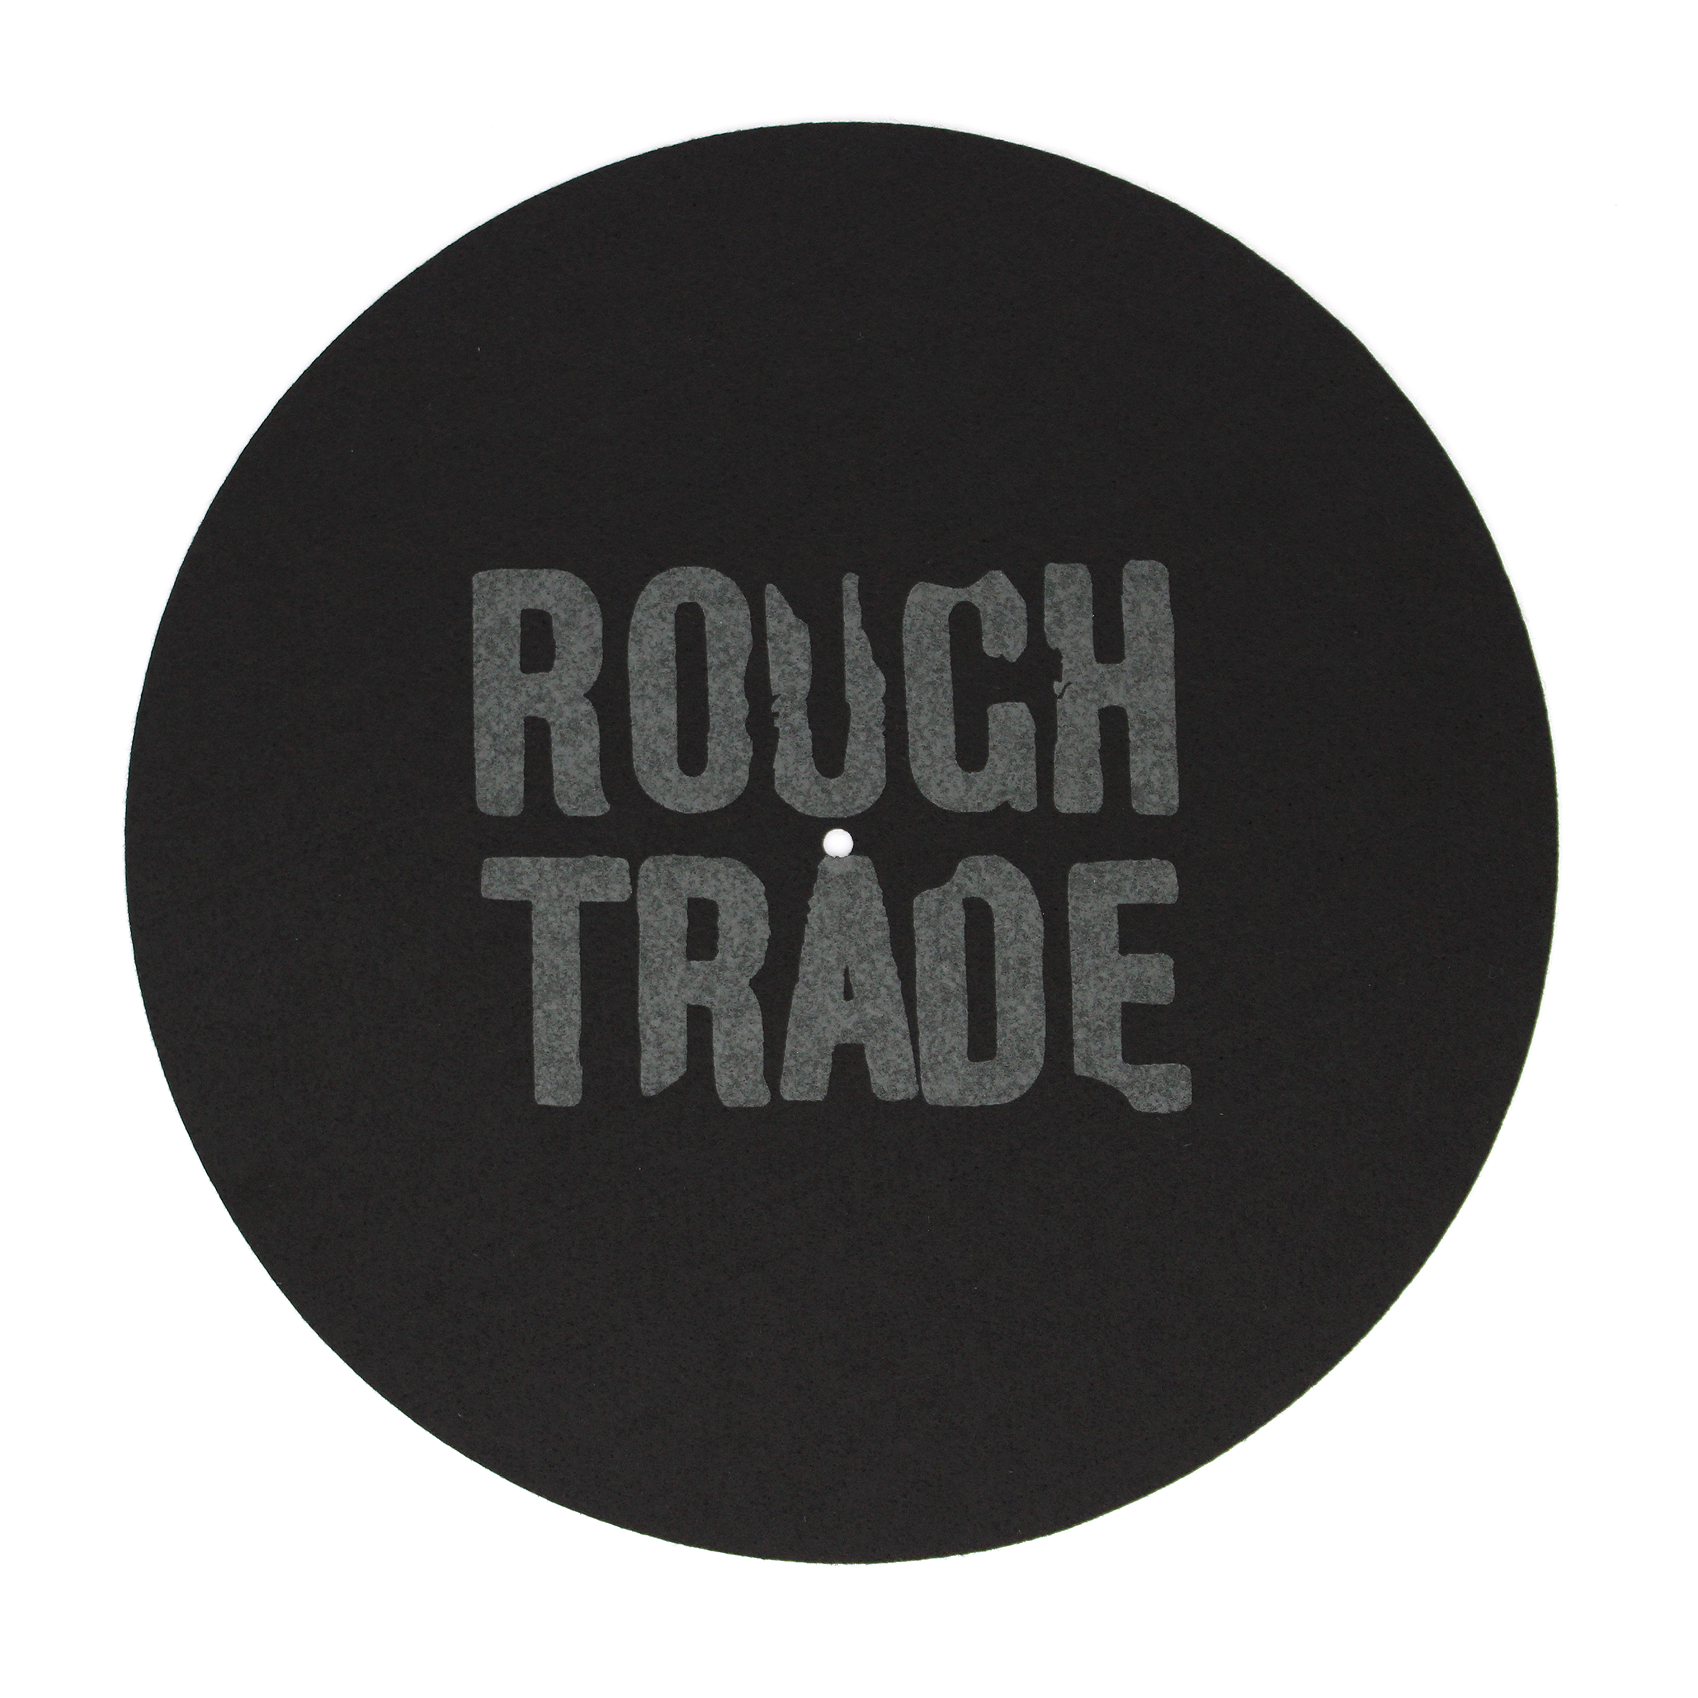 Album artwork for Album artwork for Black on Black Slipmat by Rough Trade Shops by Black on Black Slipmat - Rough Trade Shops